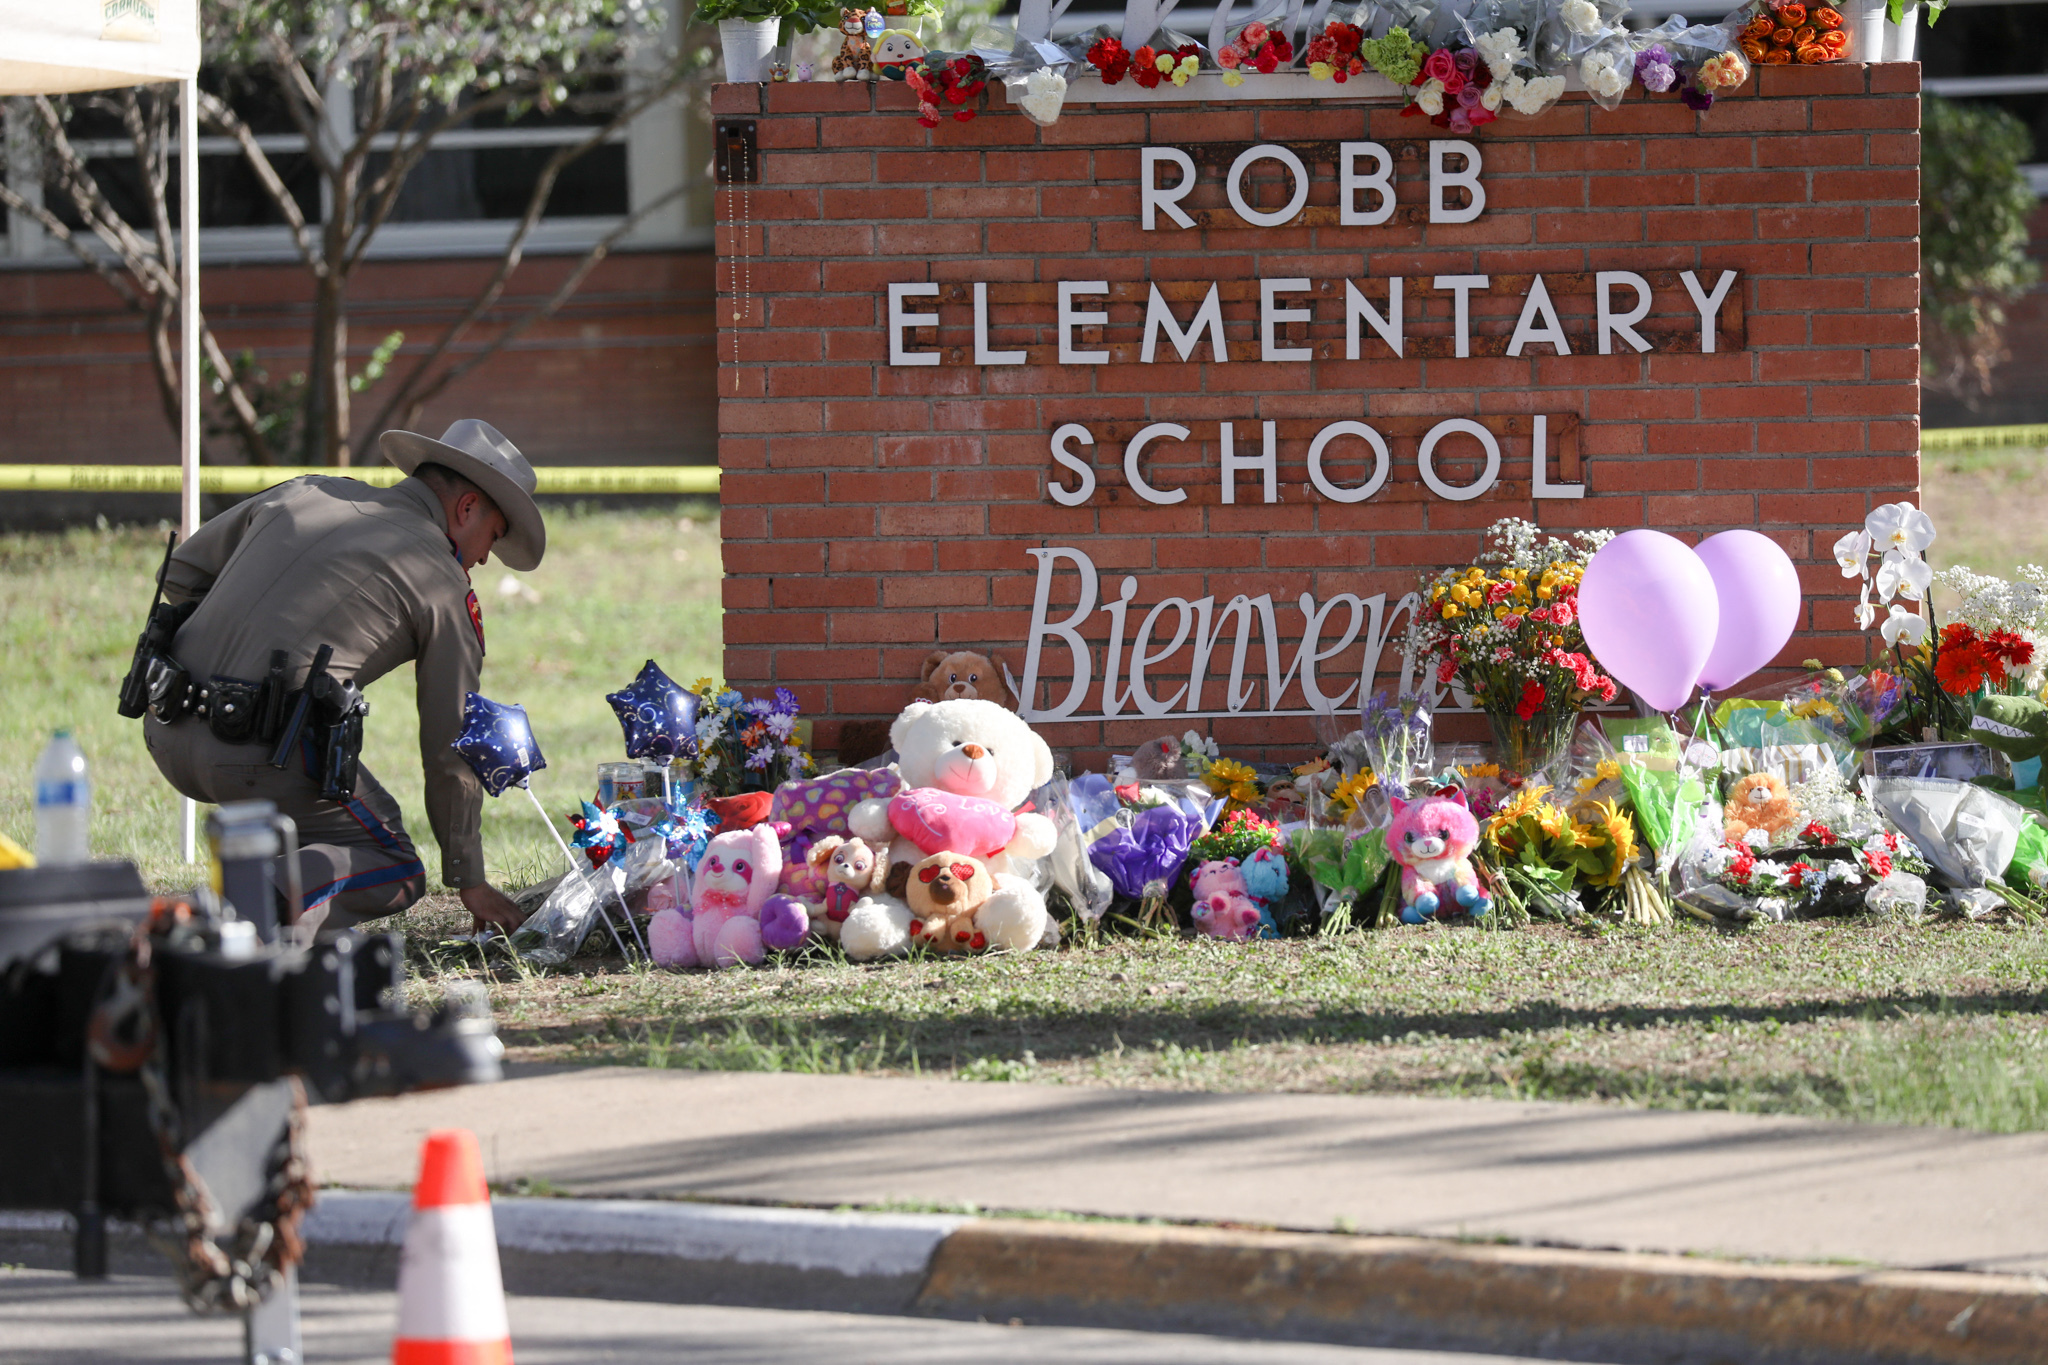 Negyven percig szabadon gyilkolt a texasi ámokfutó, mire a rendőrök végre bementek az iskolába